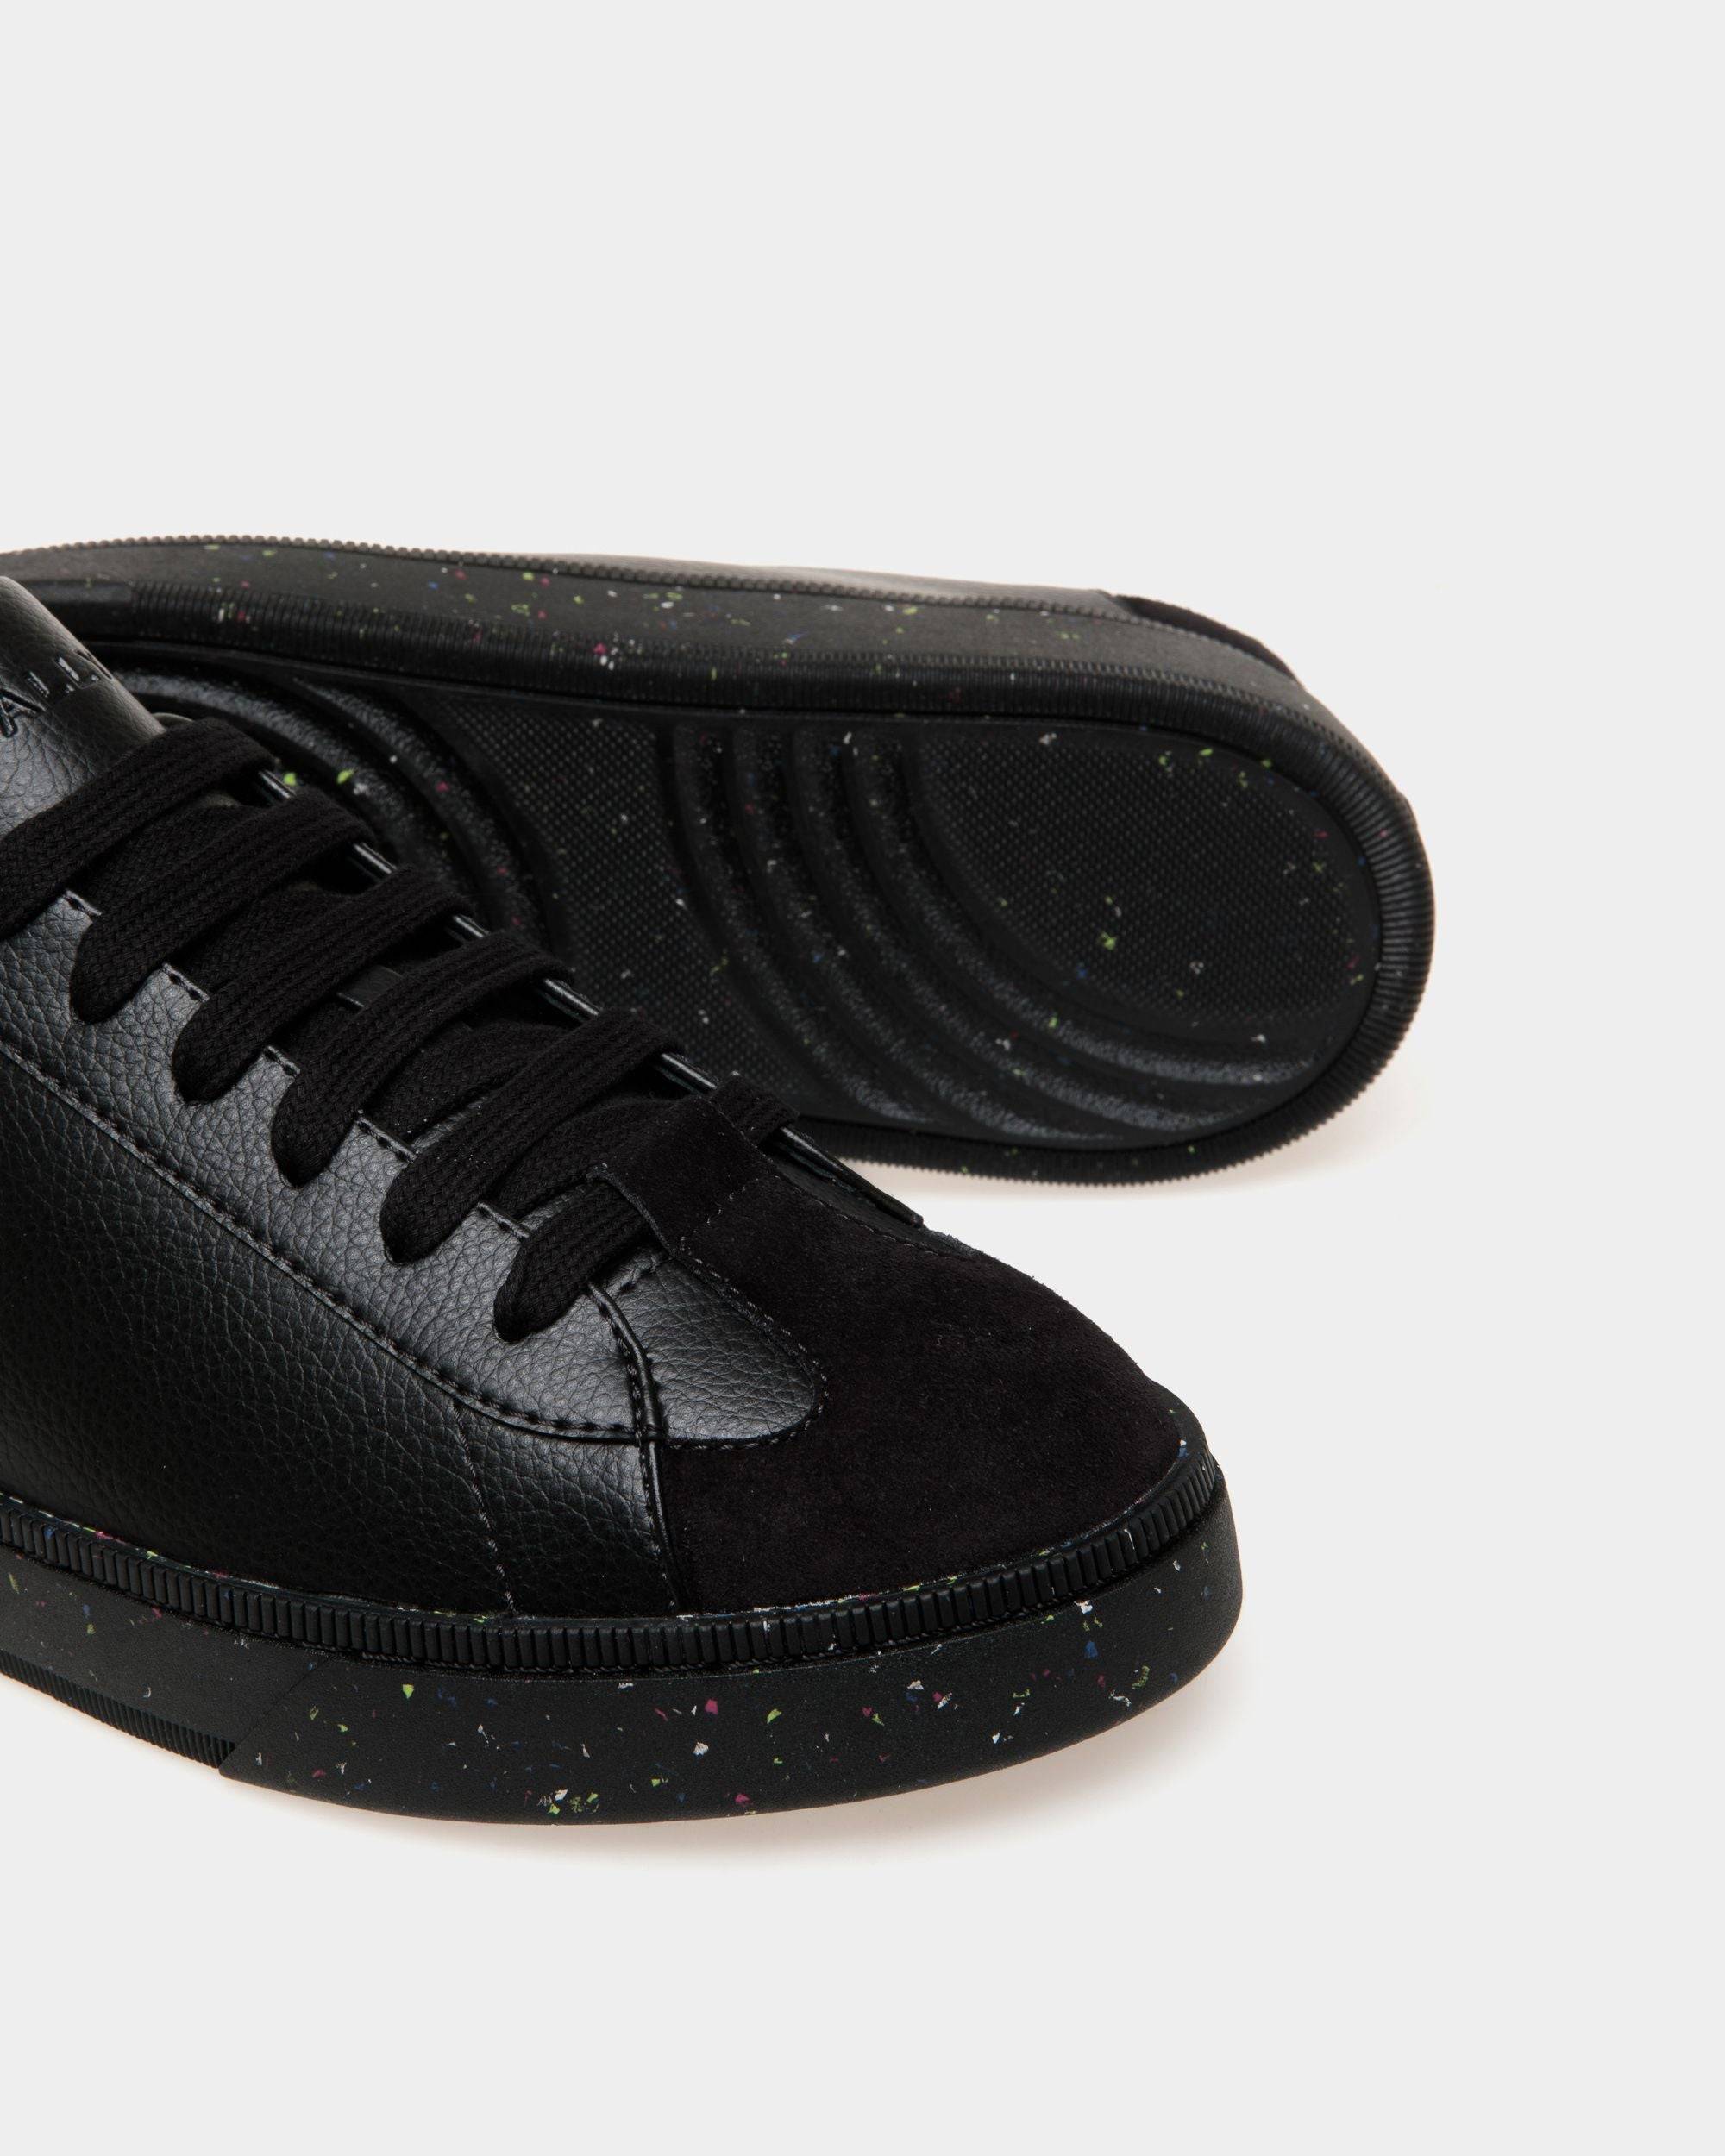 Raise | Men's Sneaker in Black Faux Leather | Bally | Still Life Below